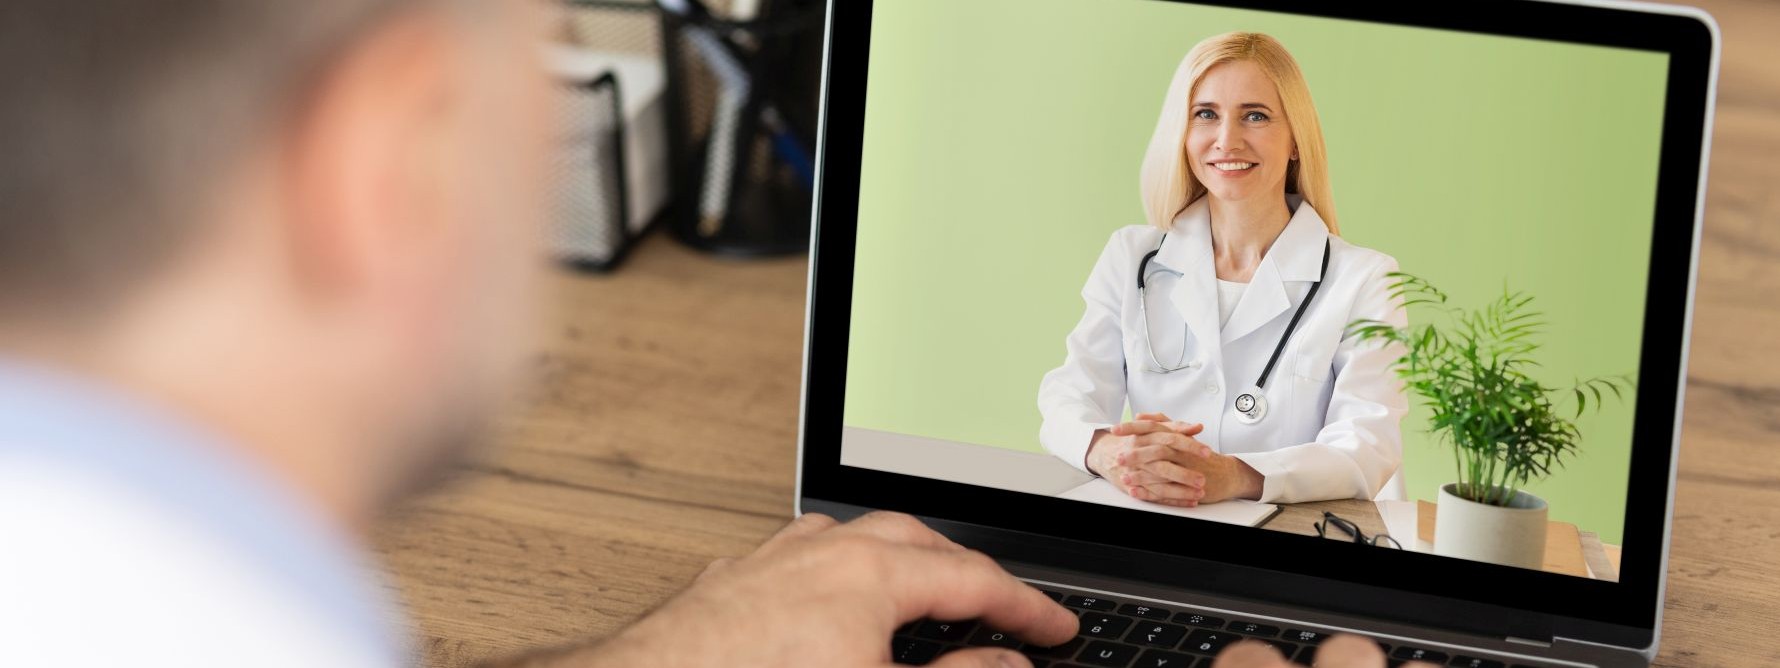 Ein Mann sitzt vor einem Laptop. Auf dem Bildschirm ist eine Ärztin, die eine Videosprechstunde gibt.